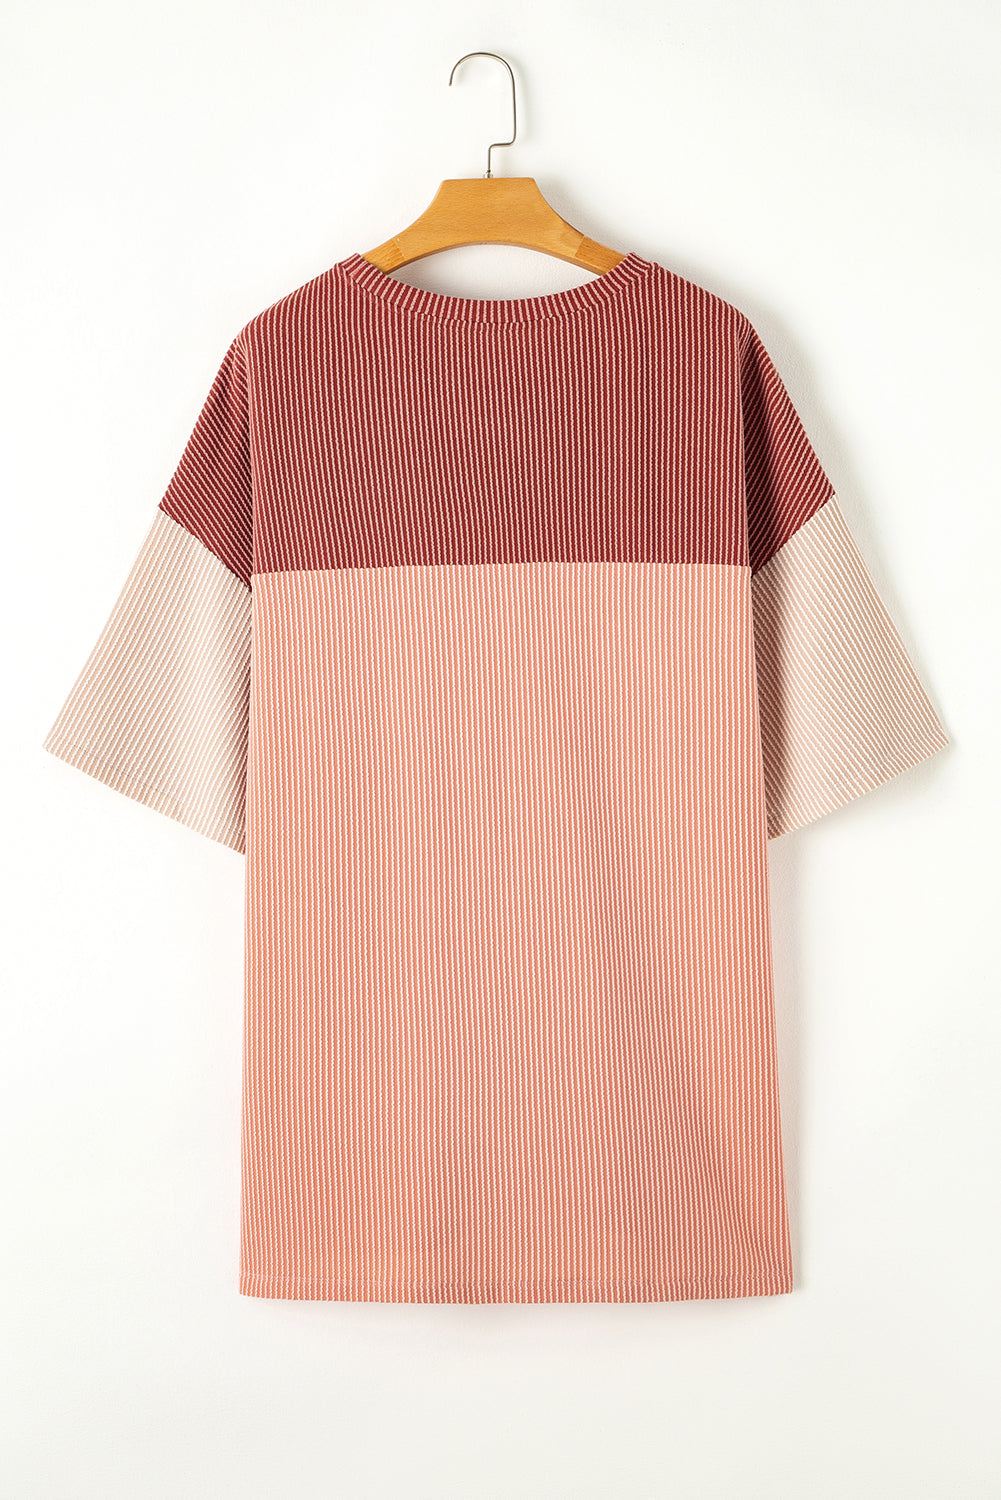 Rosafarbenes, geripptes Colorblock-T-Shirt in Übergröße